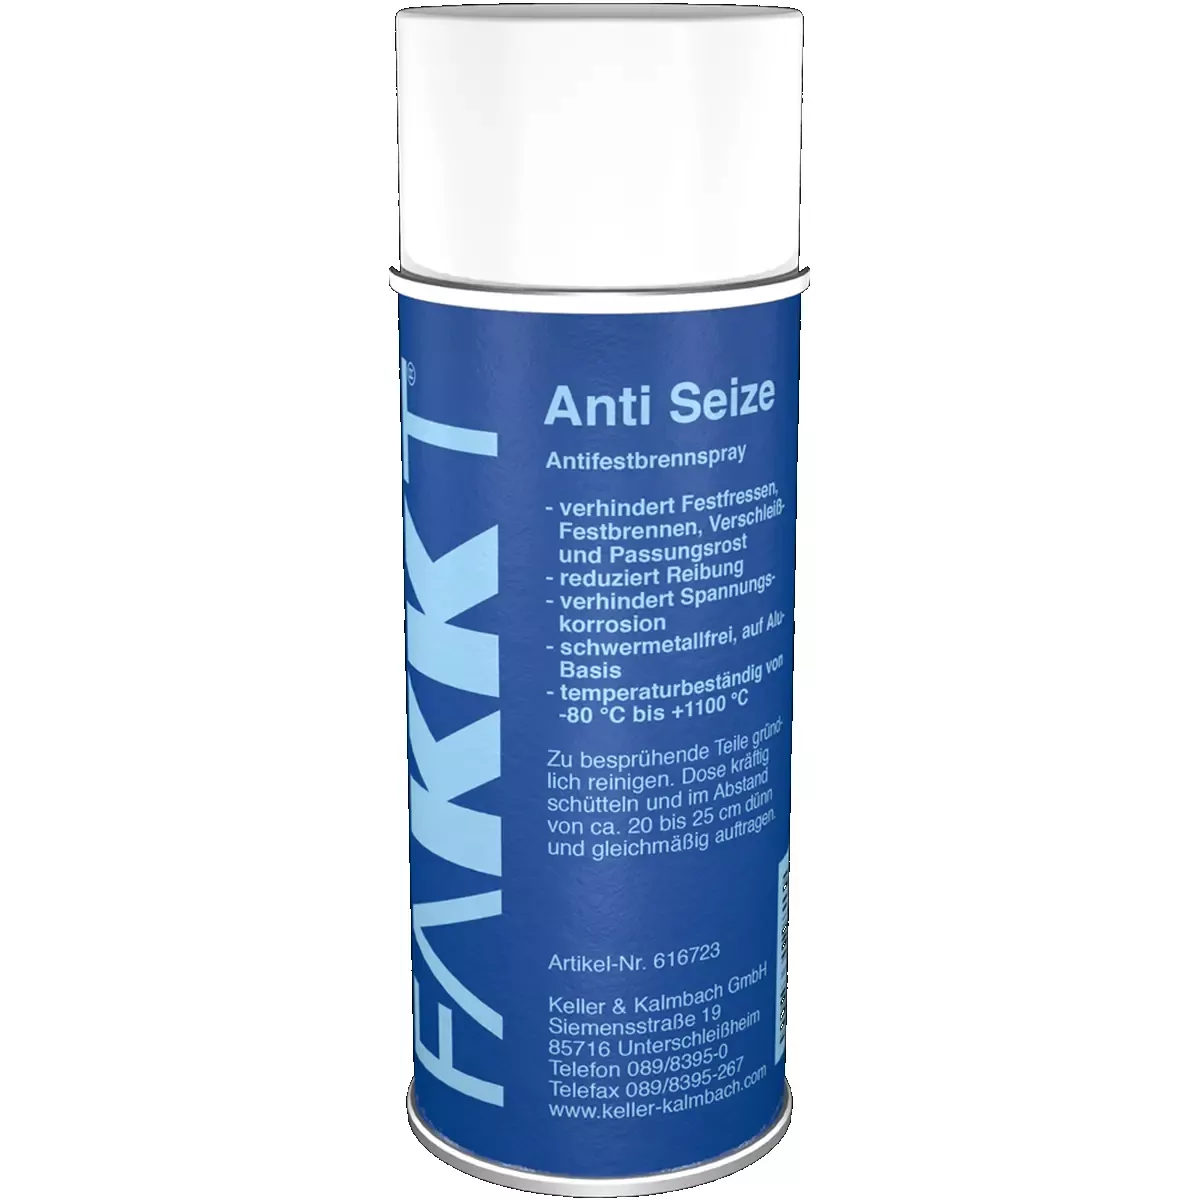 FAKKT Anti-Seize Hochleistungs-Schmiermittel, 400ml Spray 12 Stück